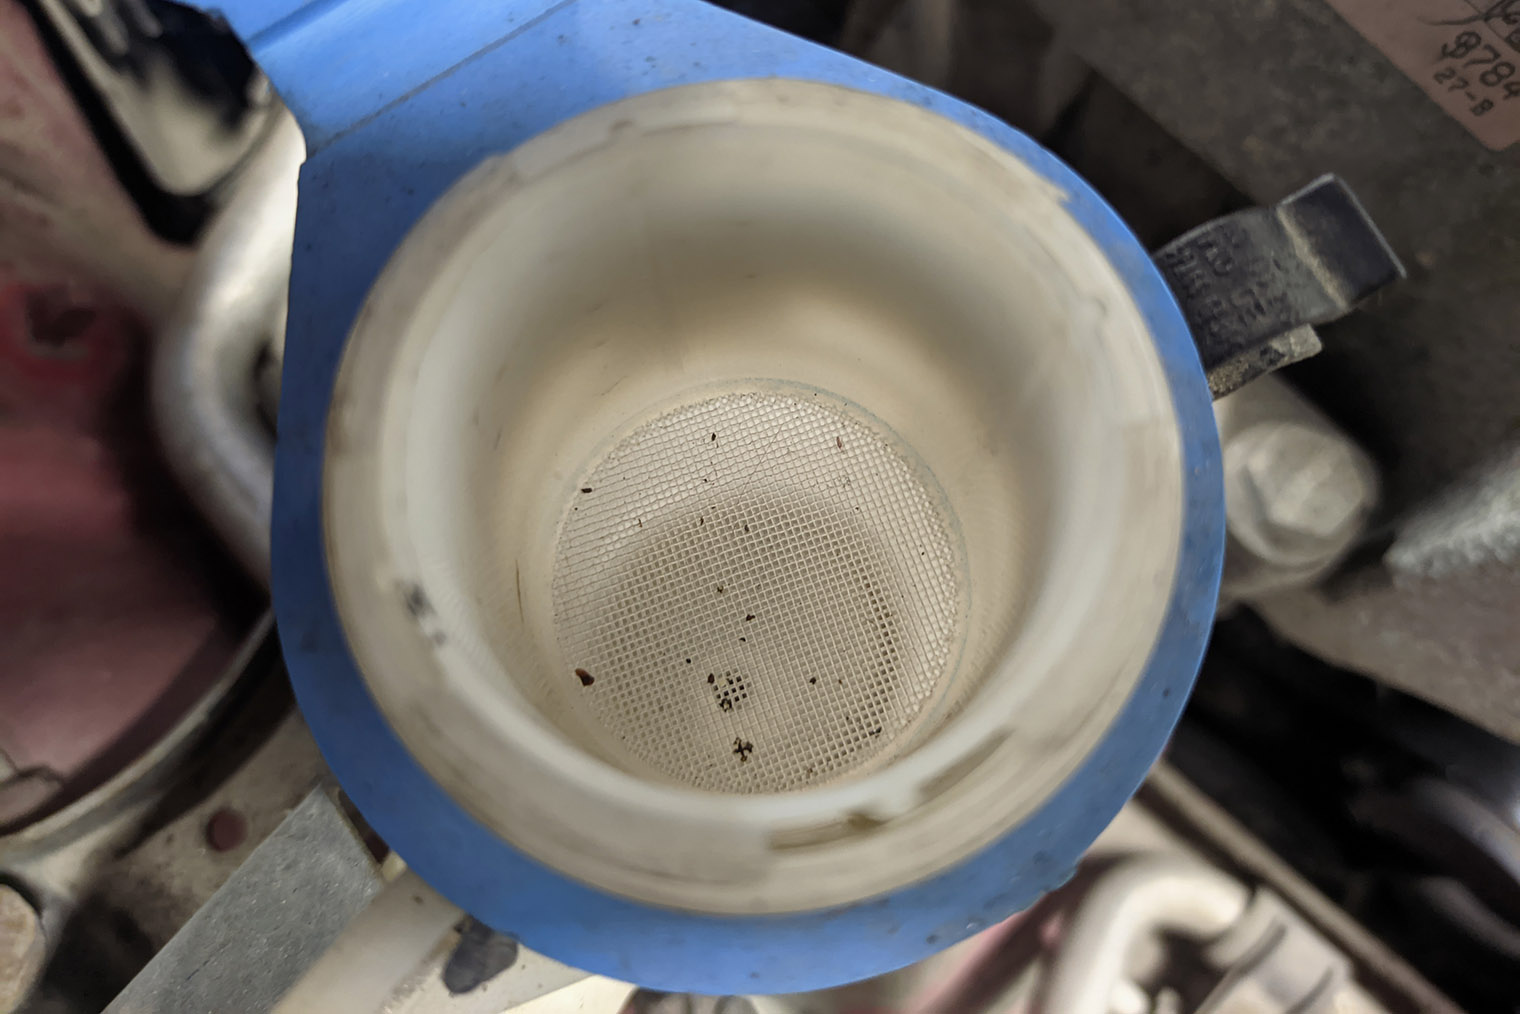 Сетчатый фильтр в горловине бачка омывателя задерживает крупную грязь, которая может забить форсунки